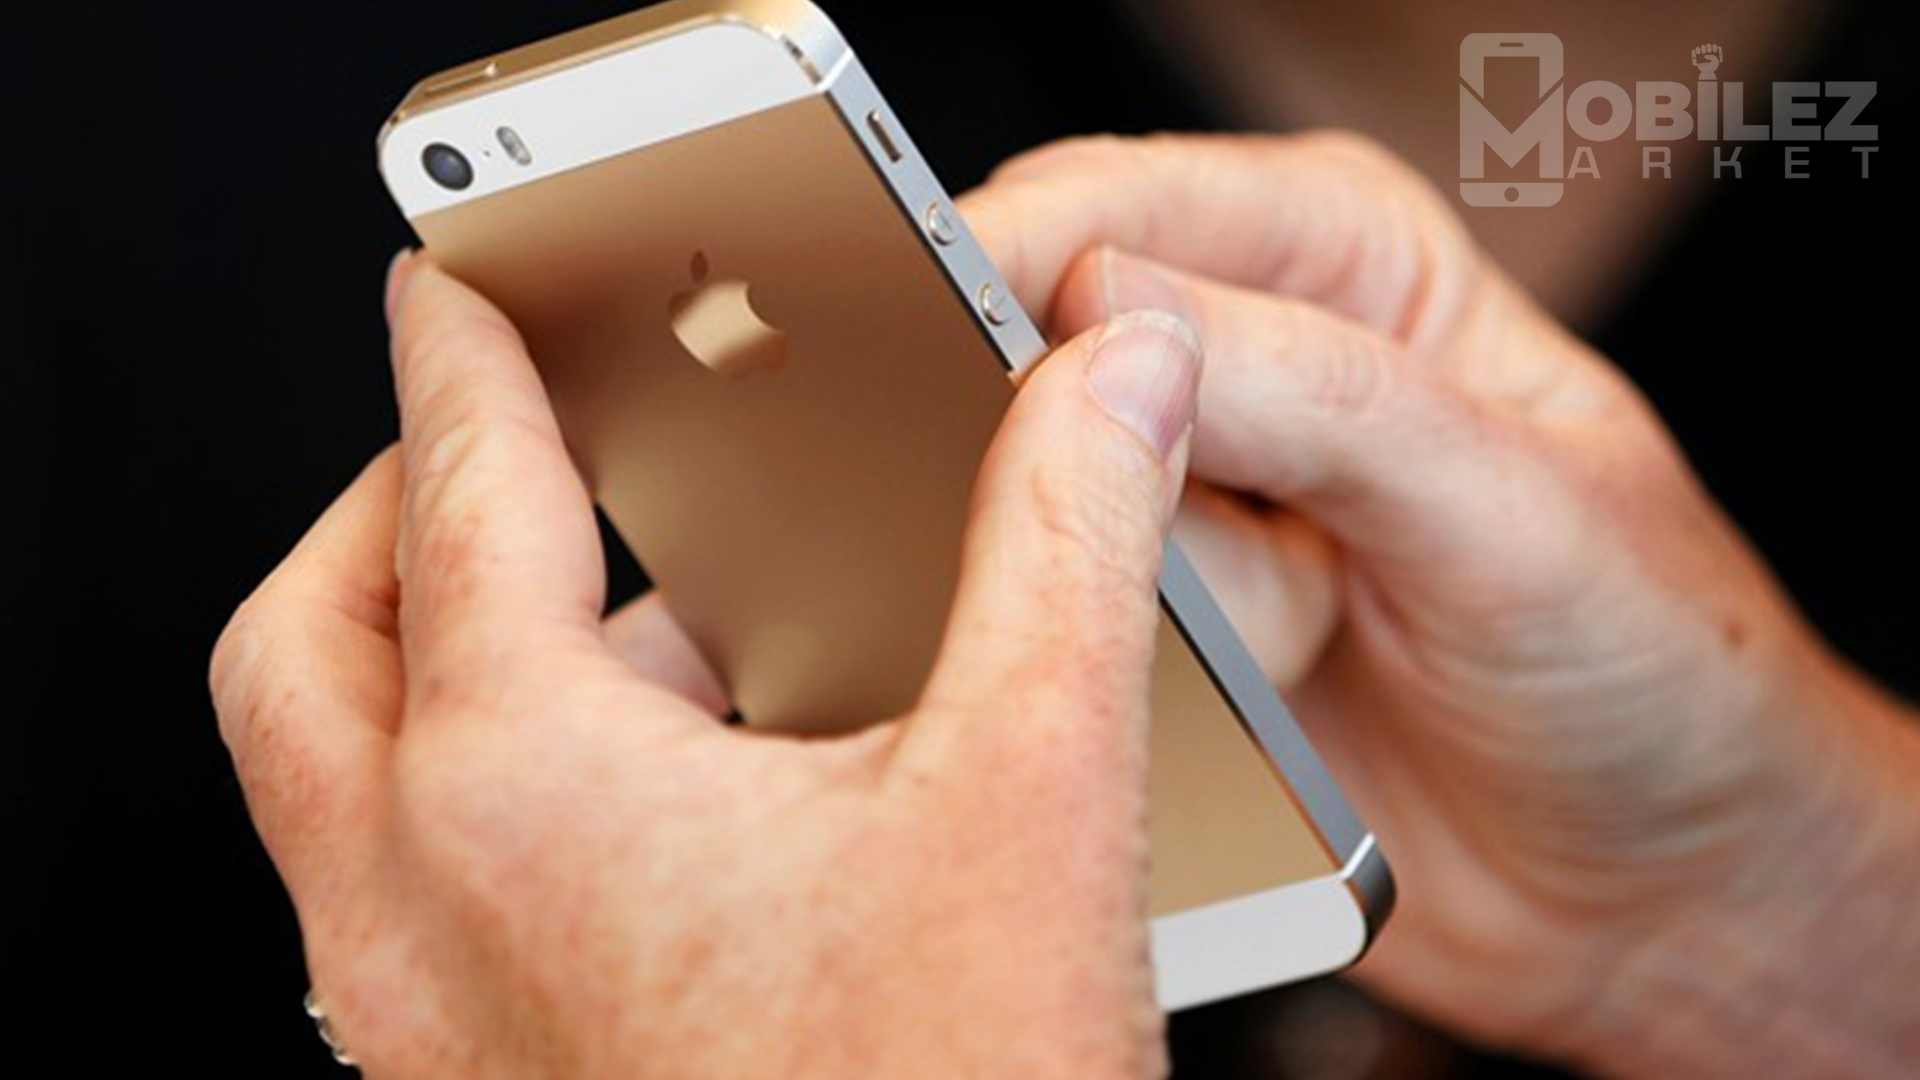 iPhone 5s Gold Buy Online | iPhone 5s New Buy Online